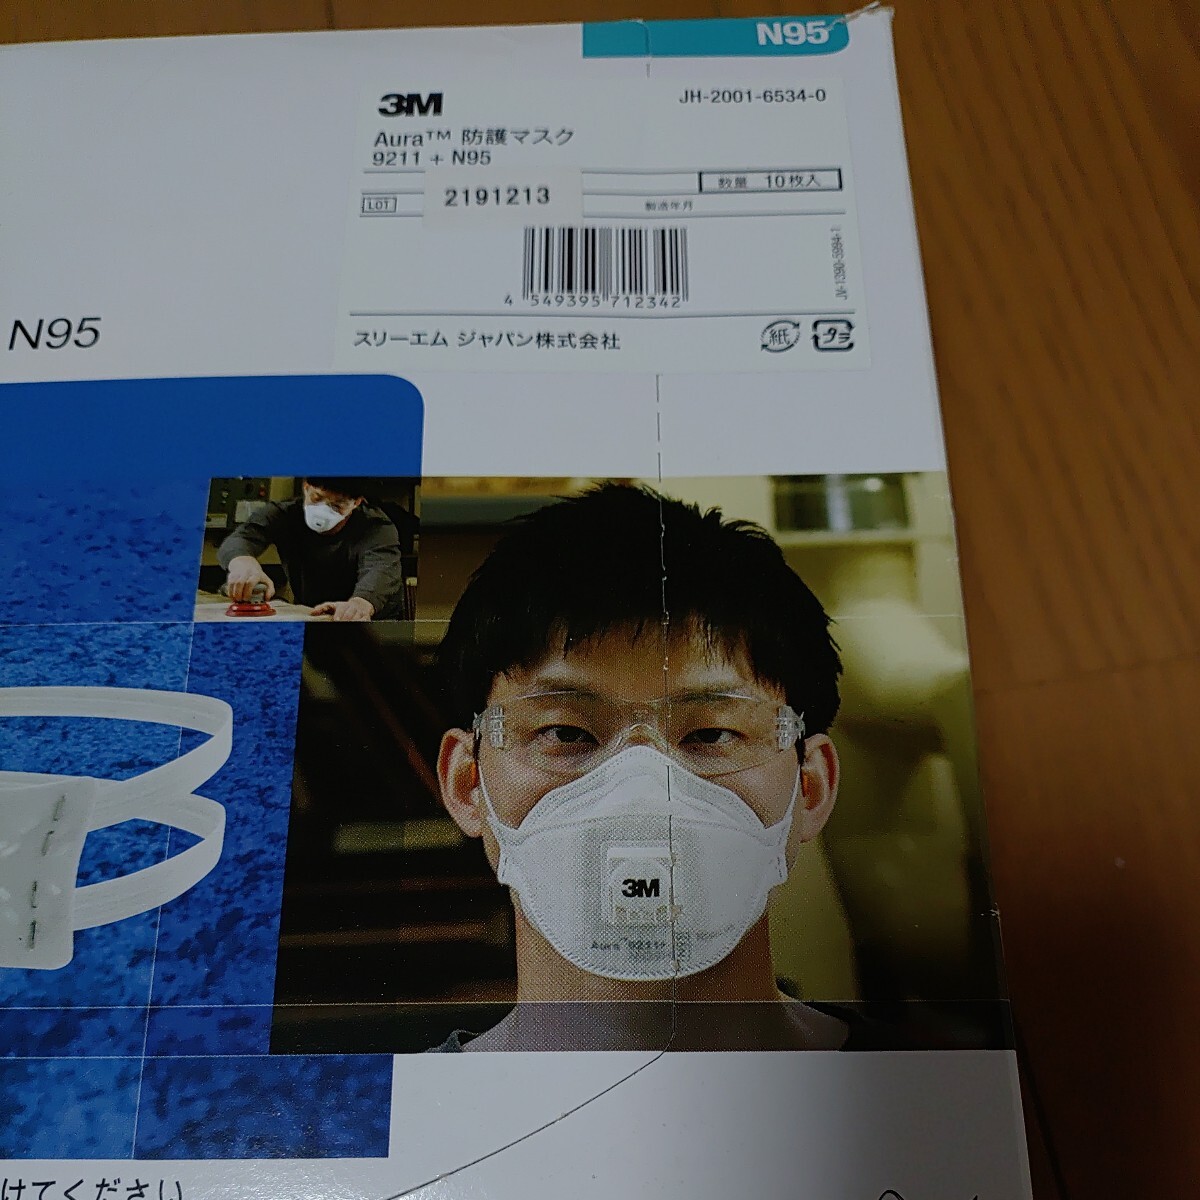  бесплатная доставка новый товар нераспечатанный 3Ms Lee M одноразовый тип пыленепроницаемый маска 9211+N95 (10 листов входит ) Aura мука мусор медицинская помощь для меры инфекционного контроля PM2.5 пыльца меры товар 